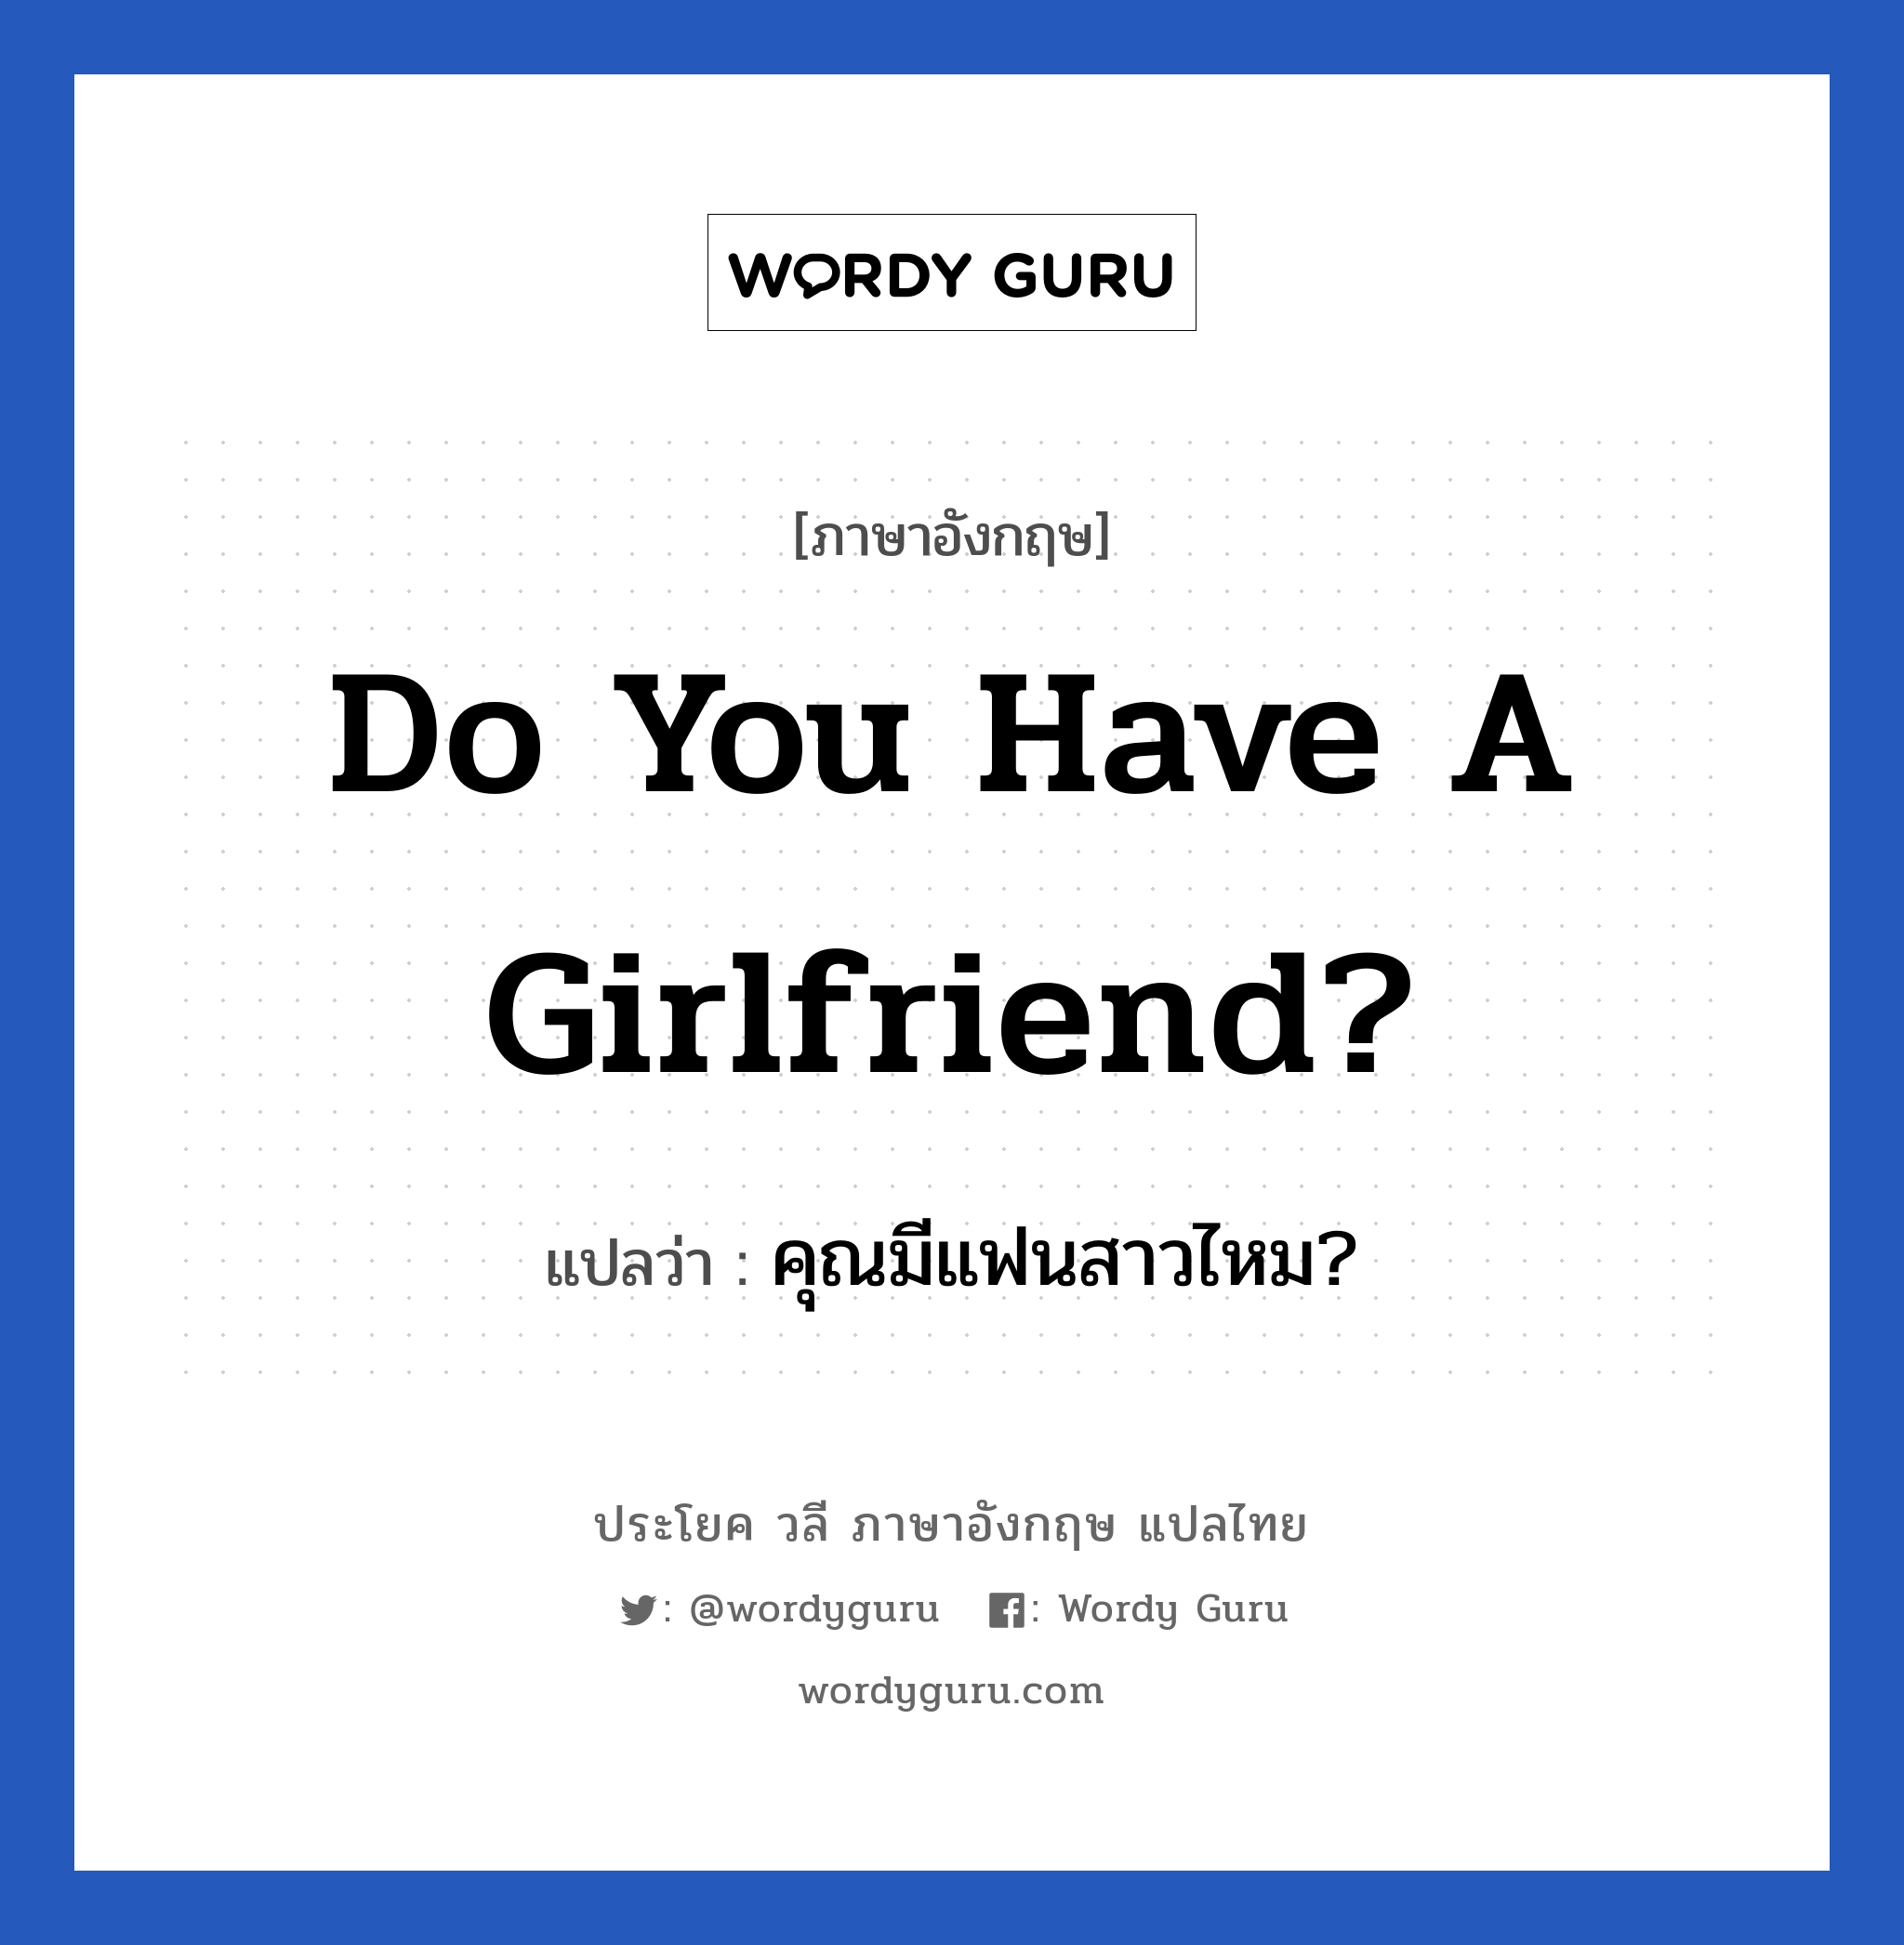 Do you have a girlfriend? แปลว่า?, วลีภาษาอังกฤษ Do you have a girlfriend? แปลว่า คุณมีแฟนสาวไหม?